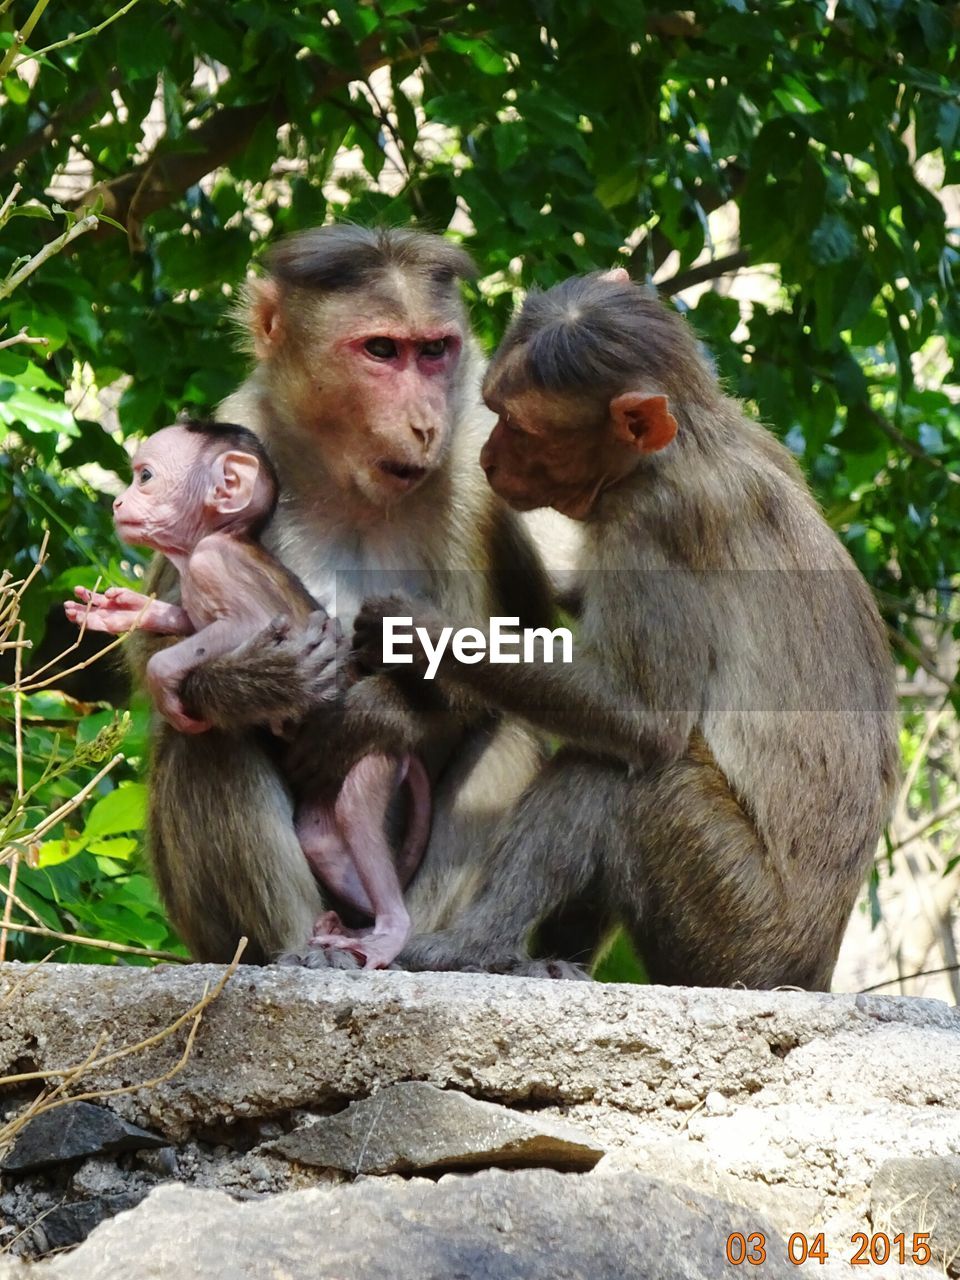 Monkey family against trees